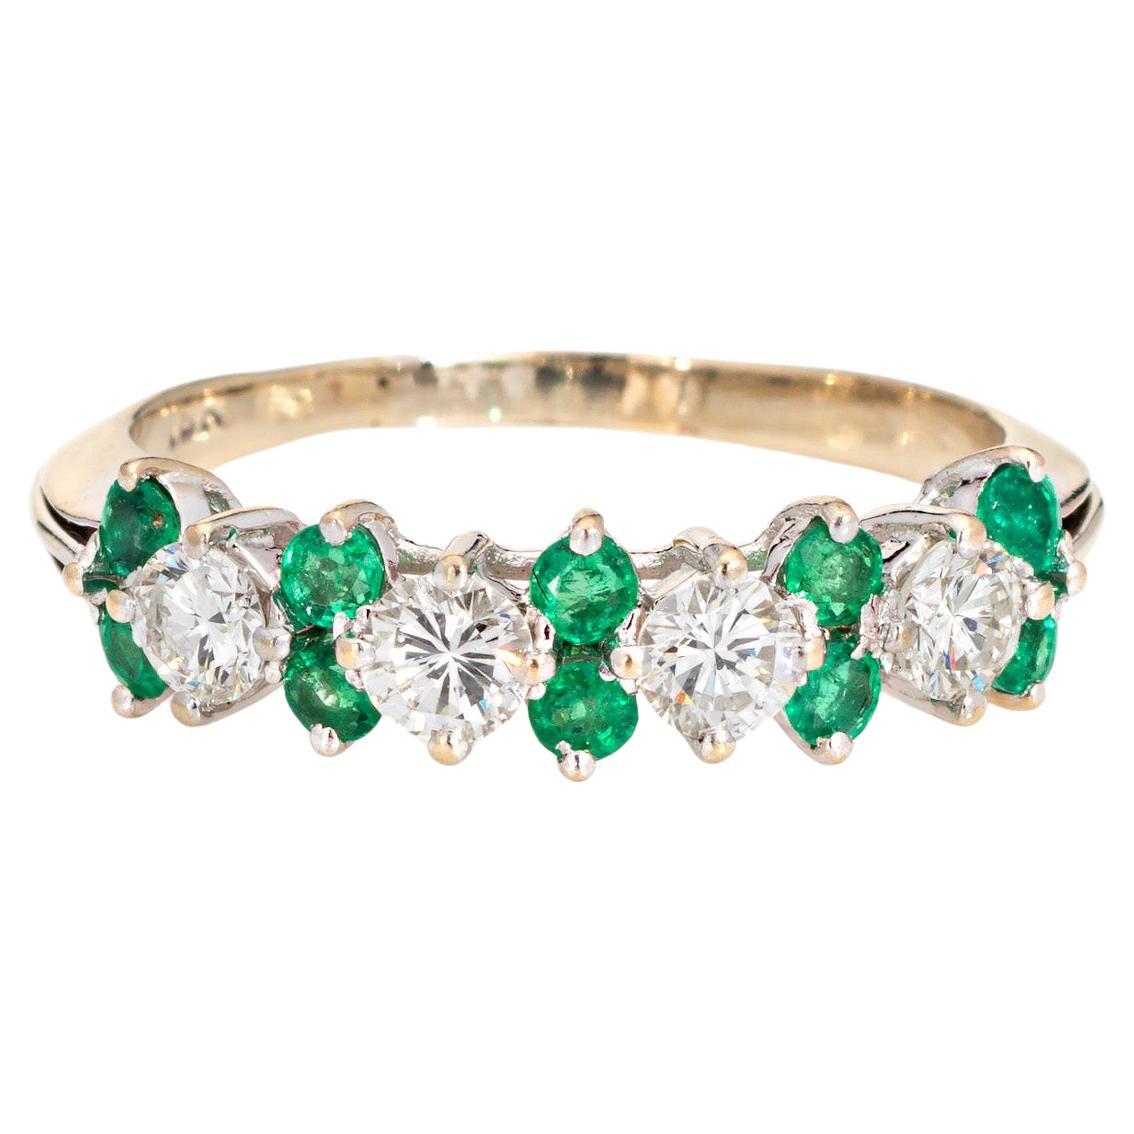 Diamond Emerald Ring Gemstone Band 18k White Gold Anniversary Fine Jewelry